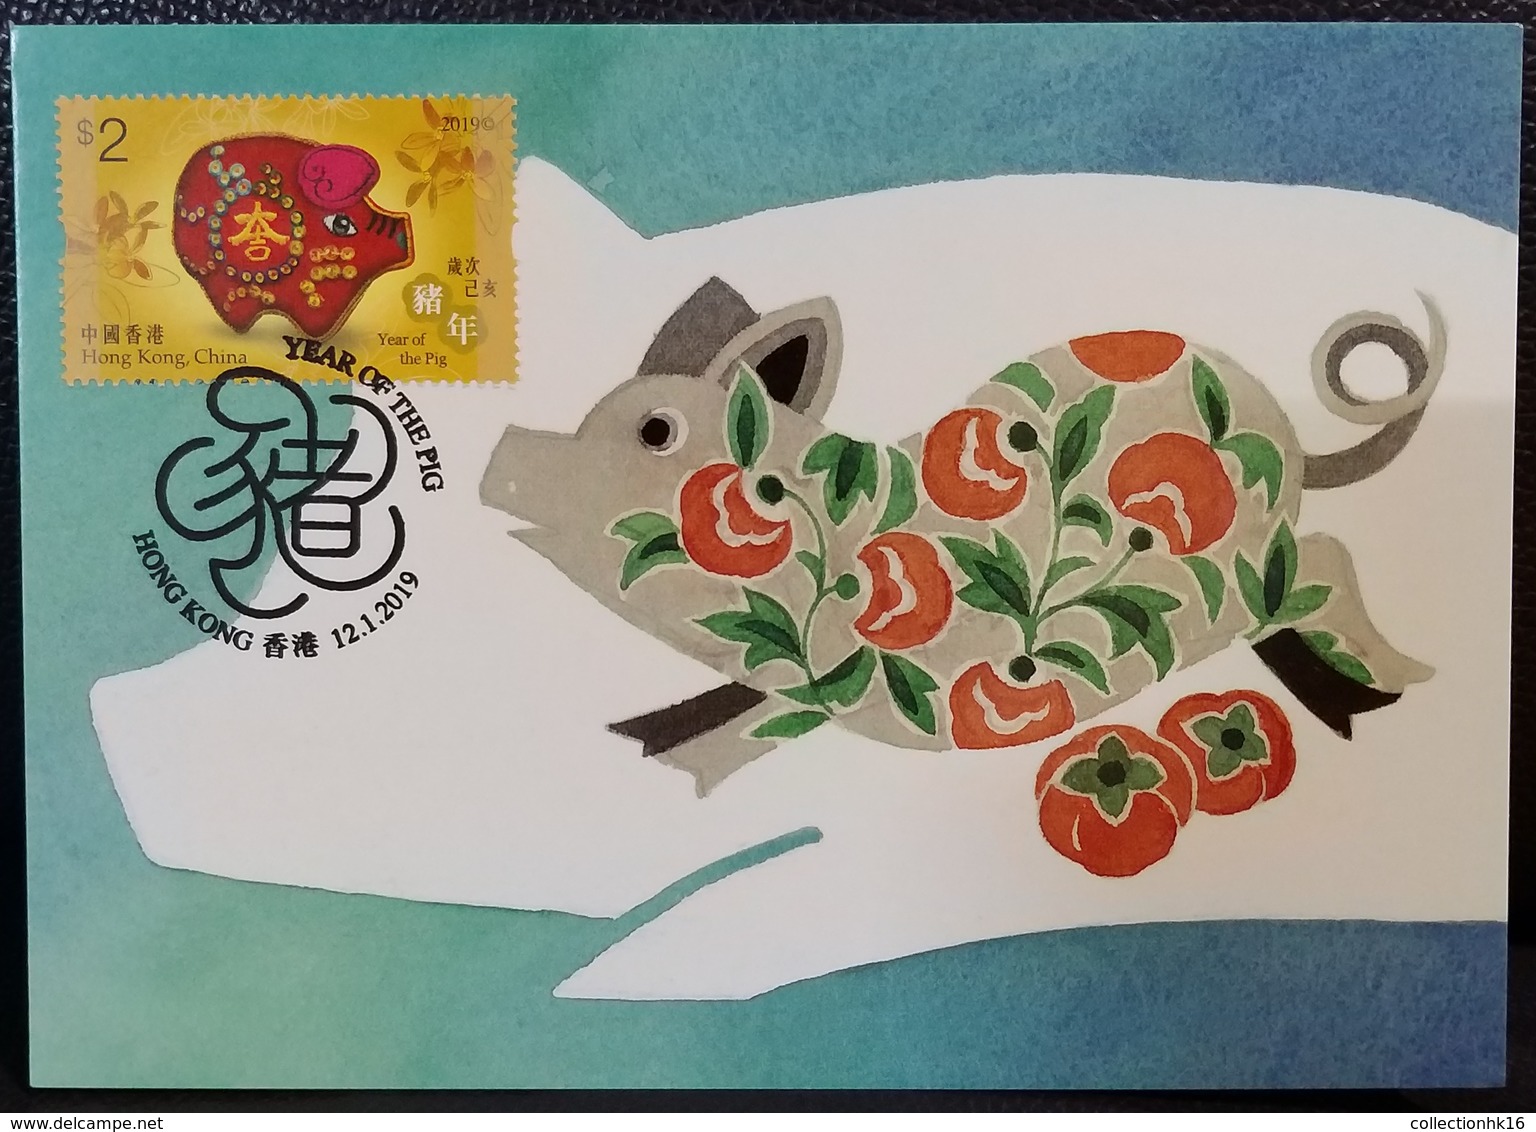 Year Of The Pig Maximum Card MC Hong Kong 2019 12 Chinese Zodiac Type E - Maximum Cards